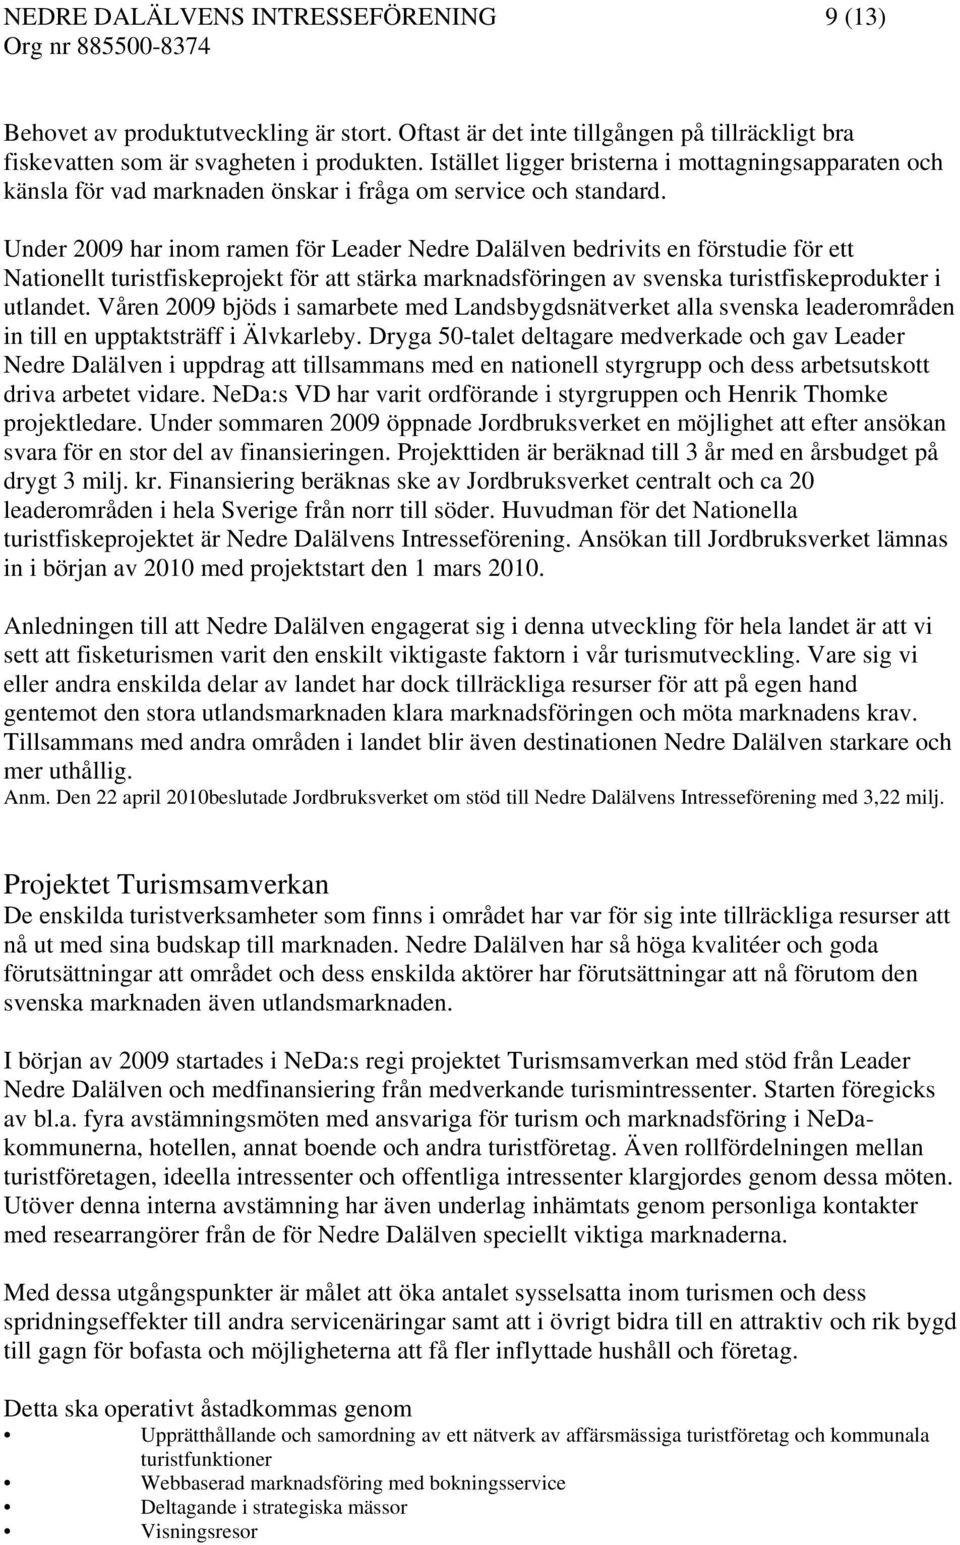 Under 2009 har inom ramen för Leader Nedre Dalälven bedrivits en förstudie för ett Nationellt turistfiskeprojekt för att stärka marknadsföringen av svenska turistfiskeprodukter i utlandet.